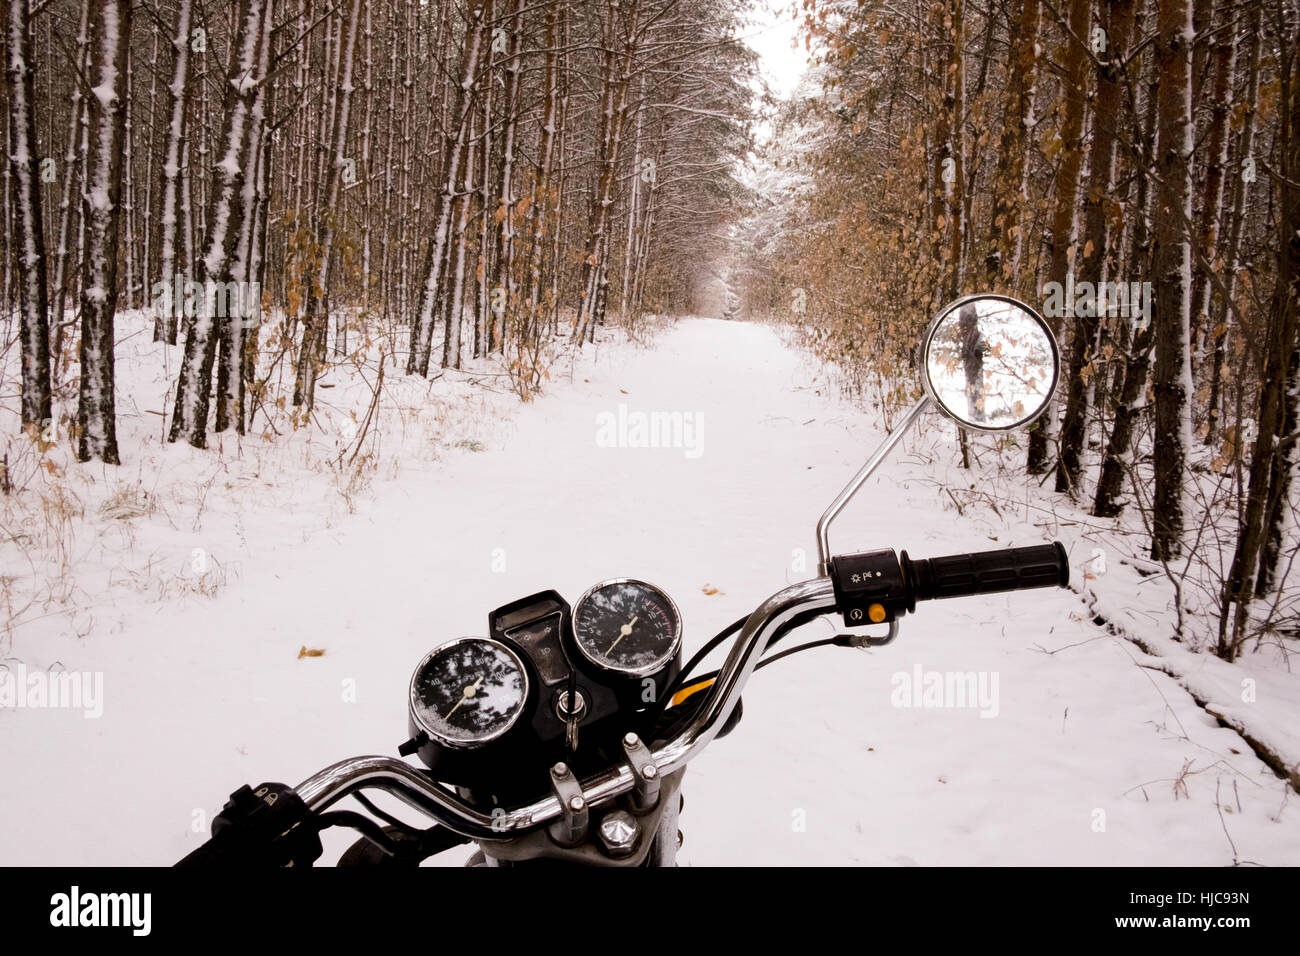 Motorrad geparkt im verschneiten Wald Stockfoto